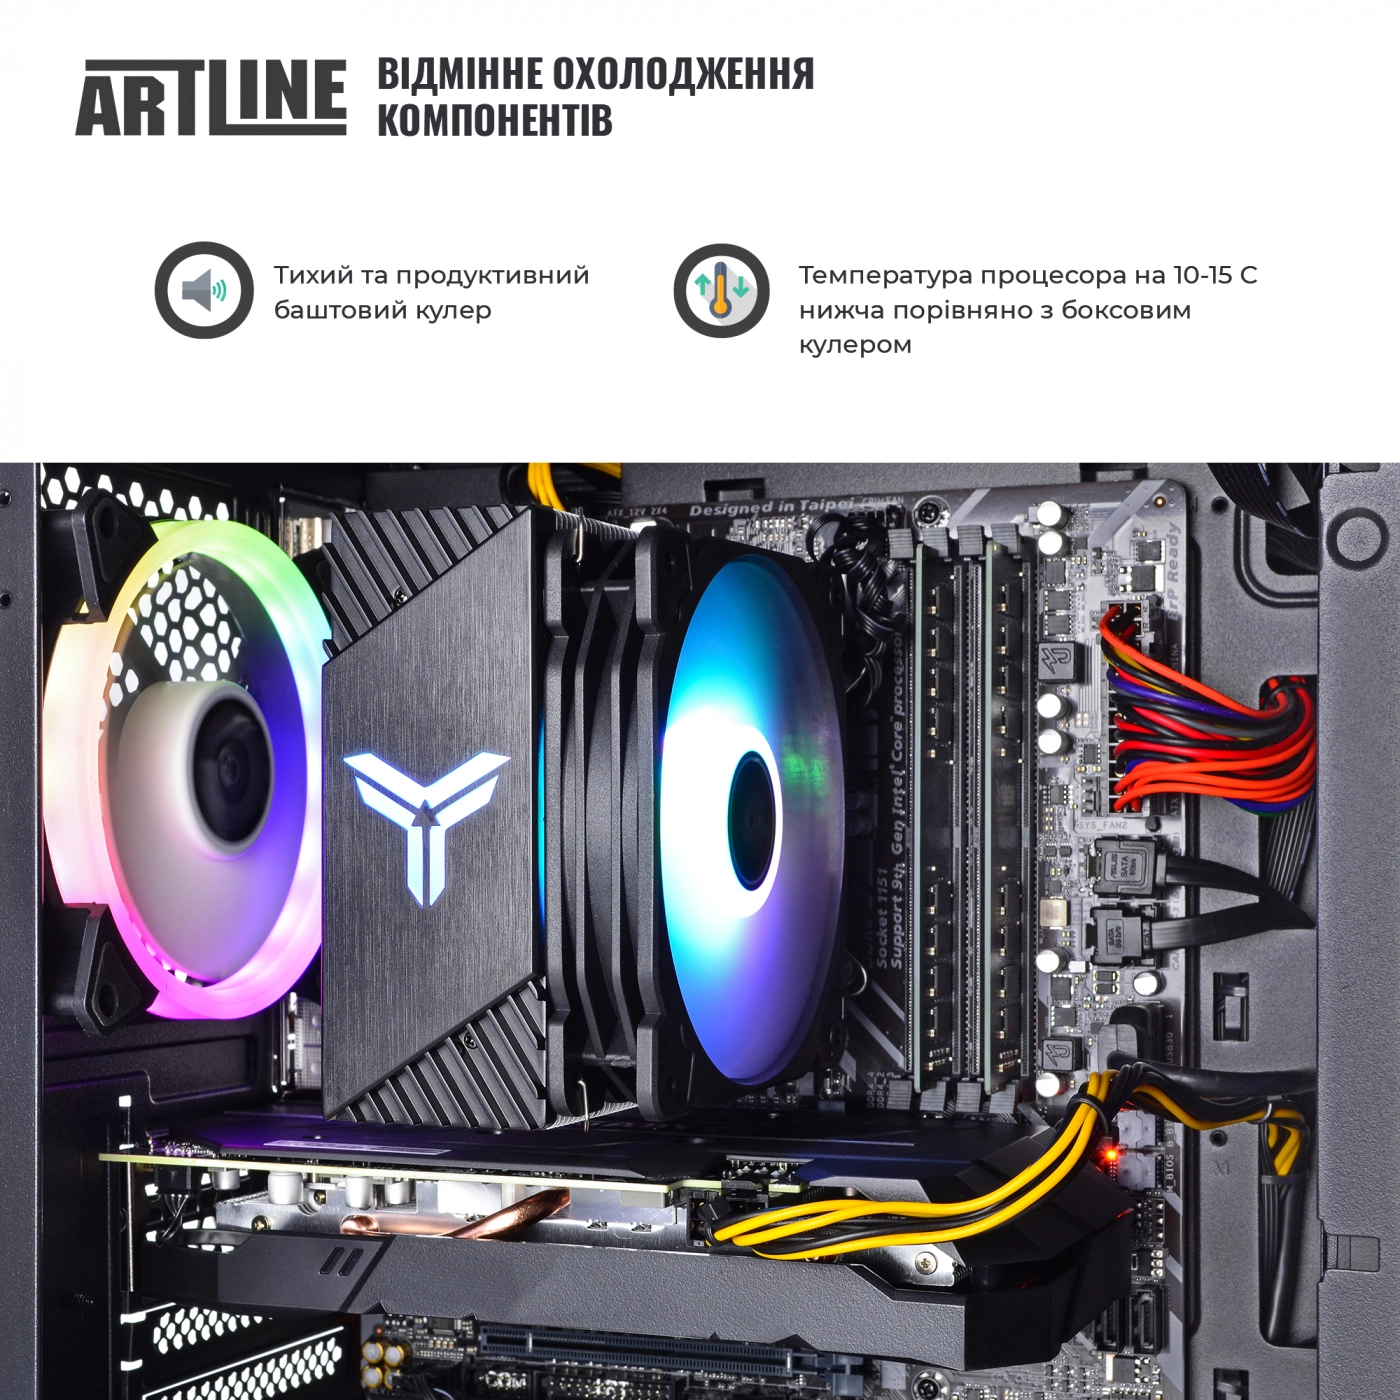 Купить Компьютер ARTLINE Gaming X71v65 - фото 4